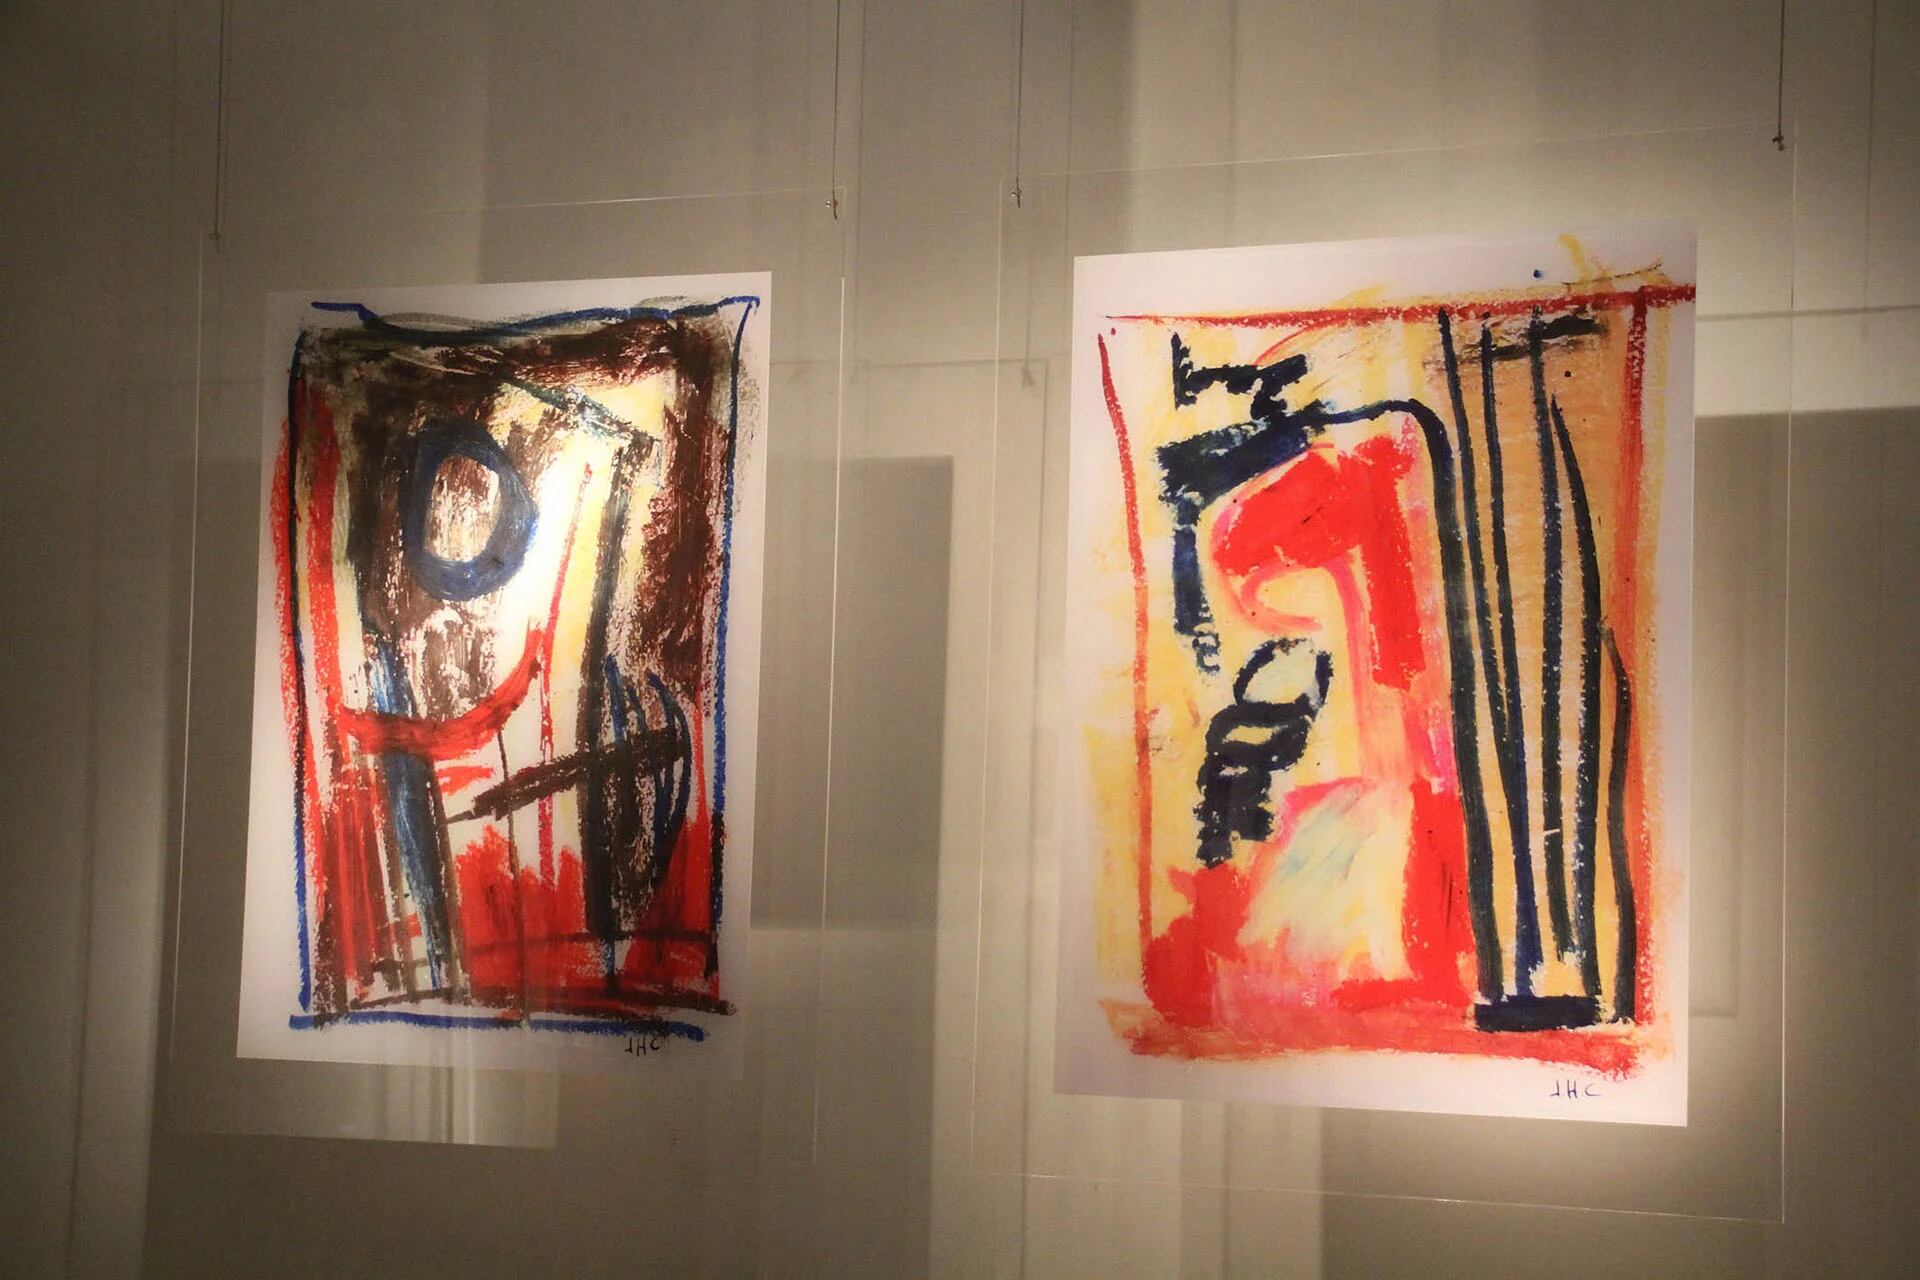 La exhibición de bocetos y esculturas de Julio Hirsch Chávez